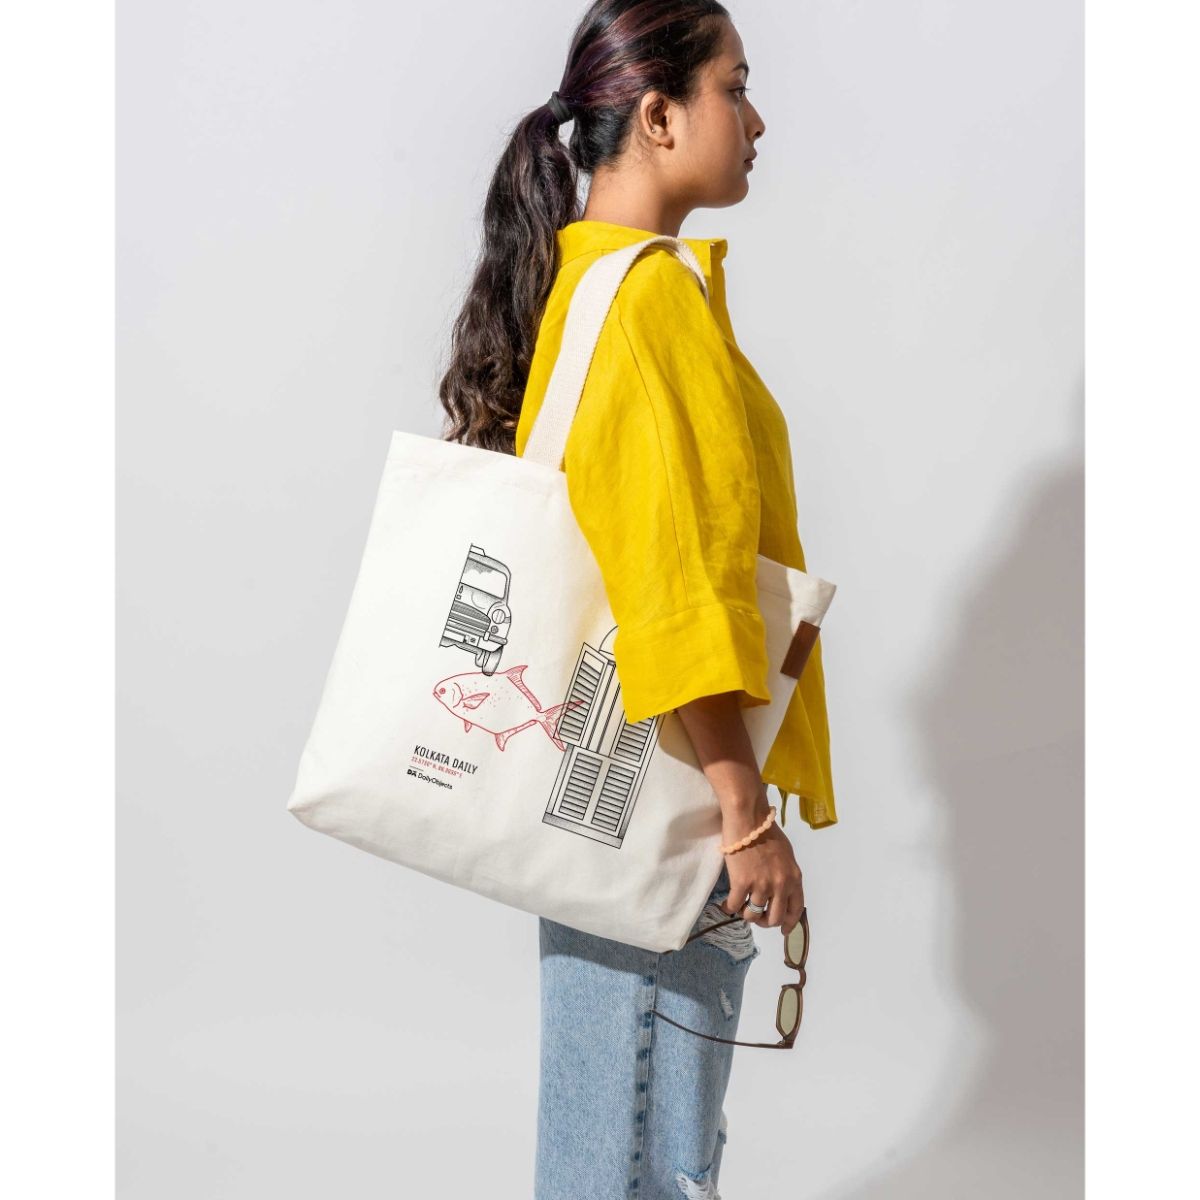 Guess Handbag Shoulder Bag Crossbody Bag Clutch India | Ubuy